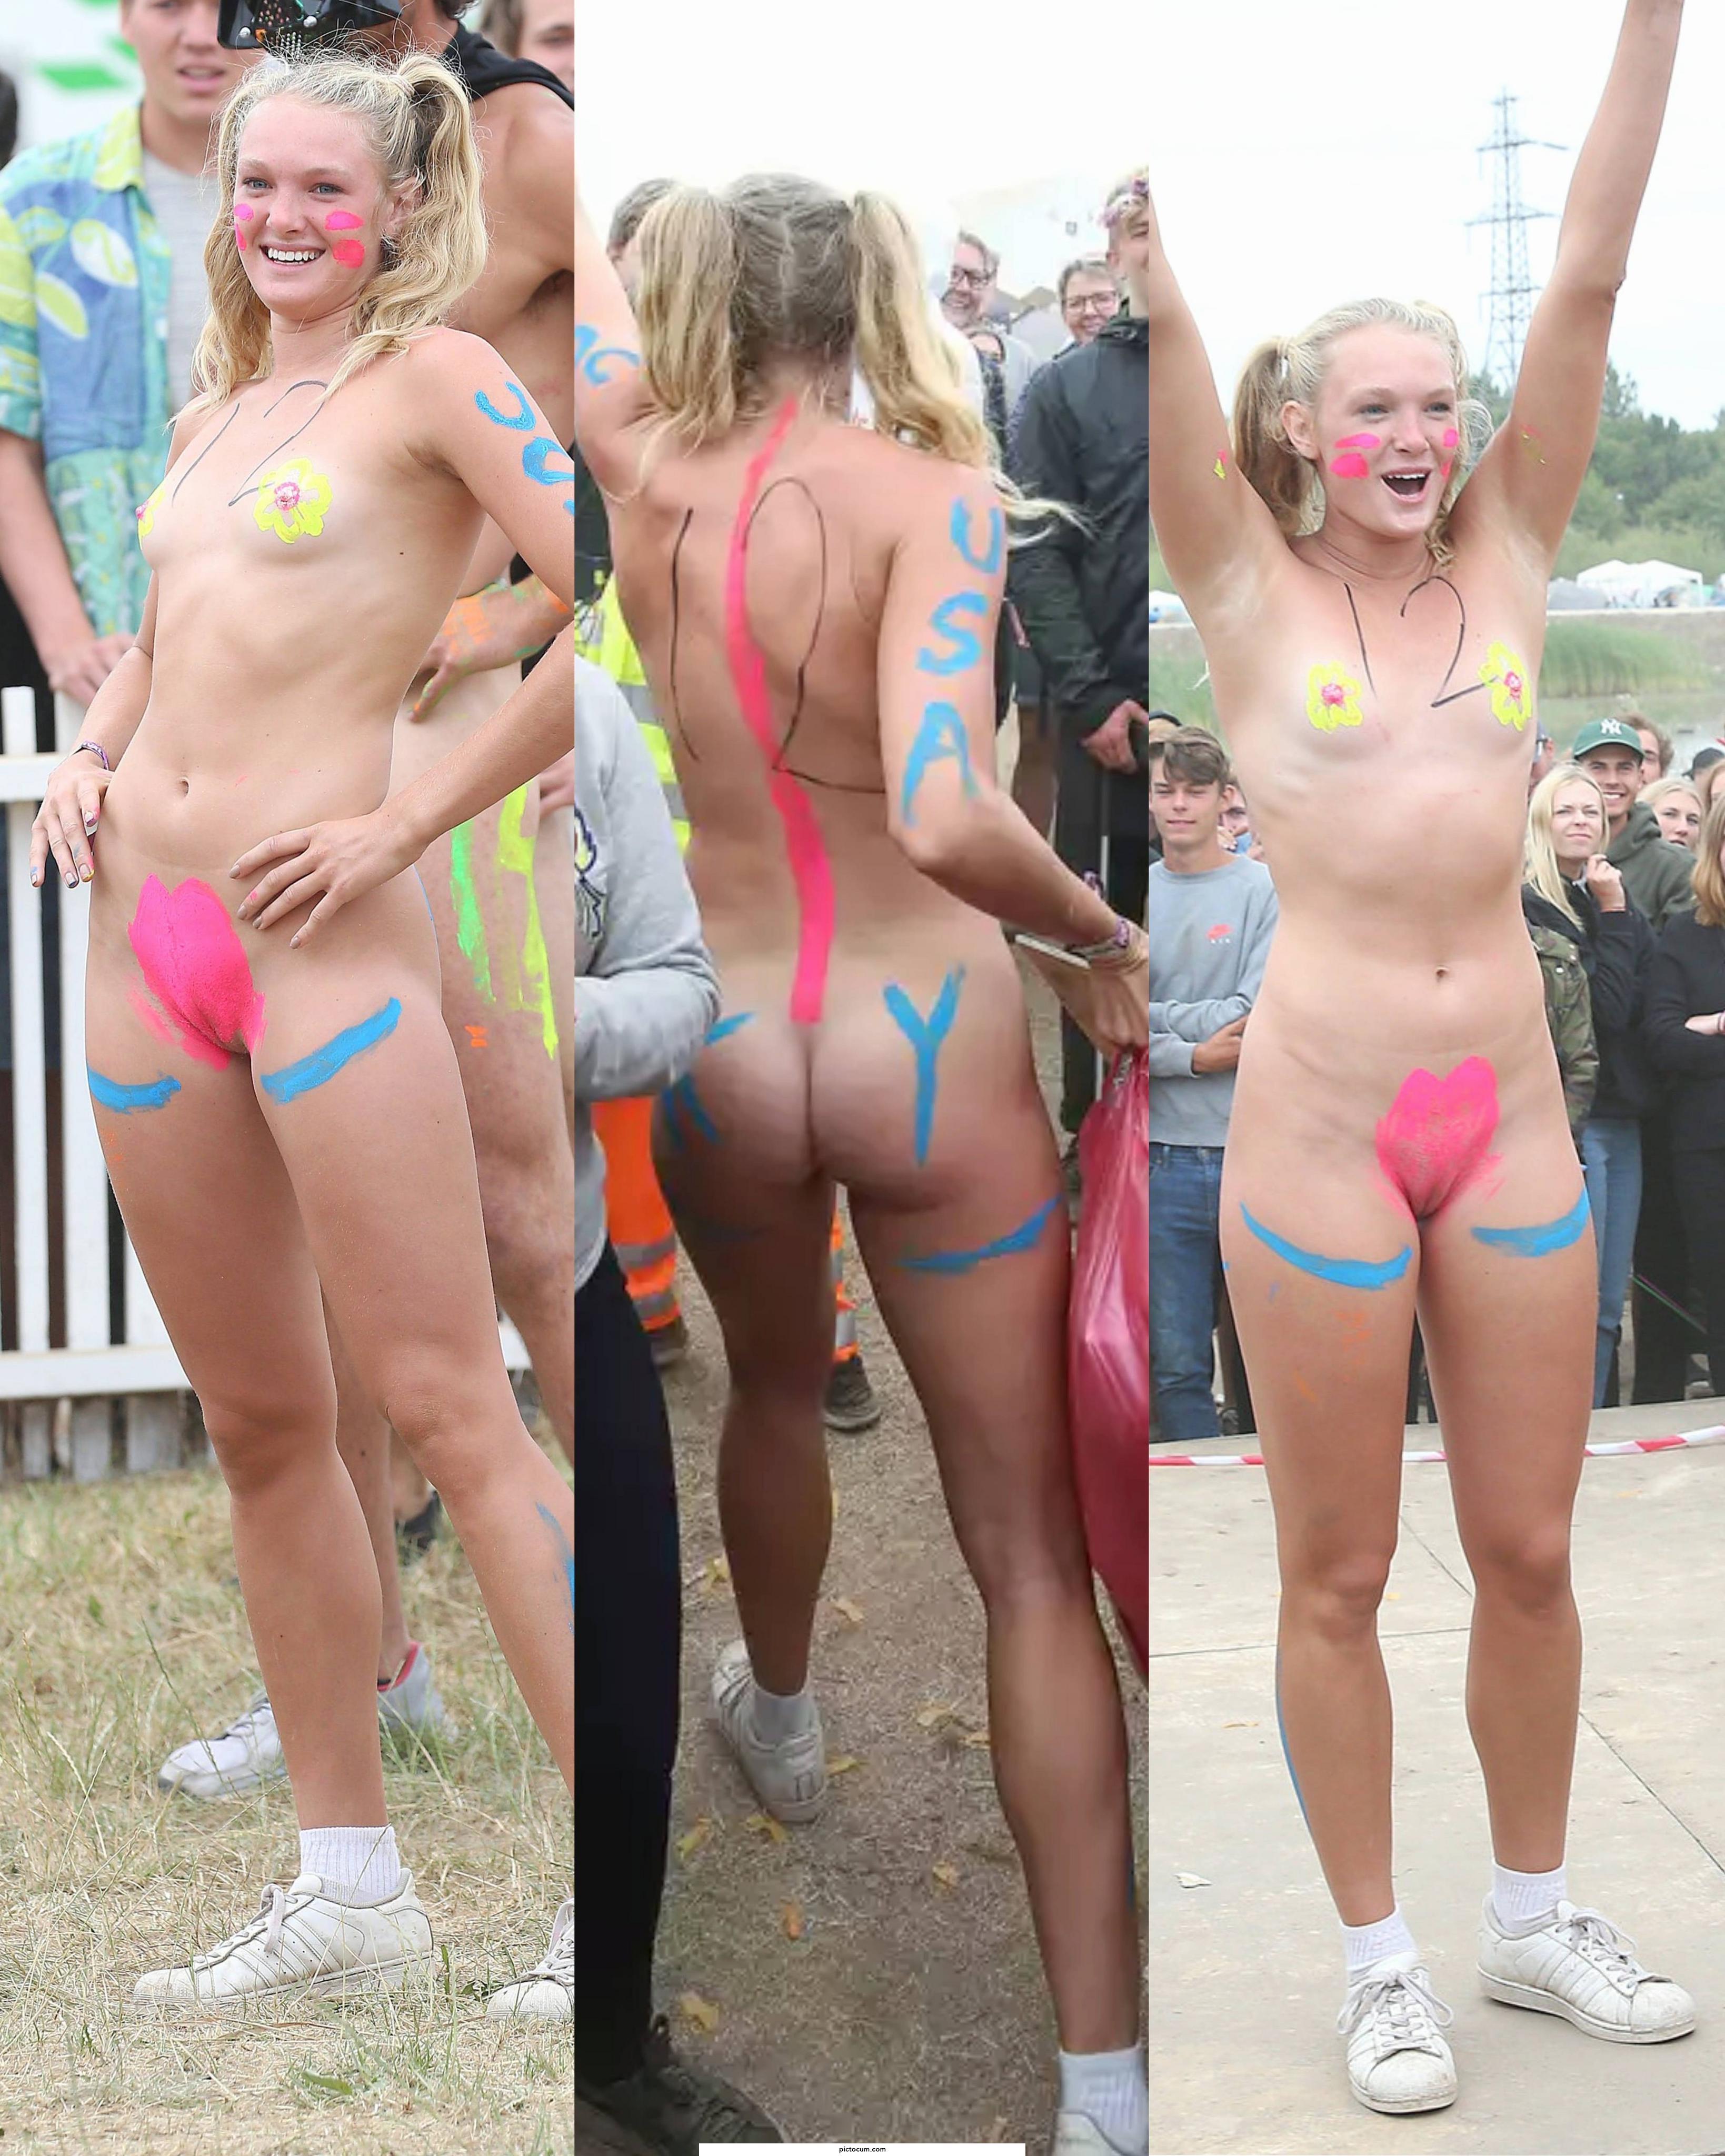 Roskilde festival nude run winner